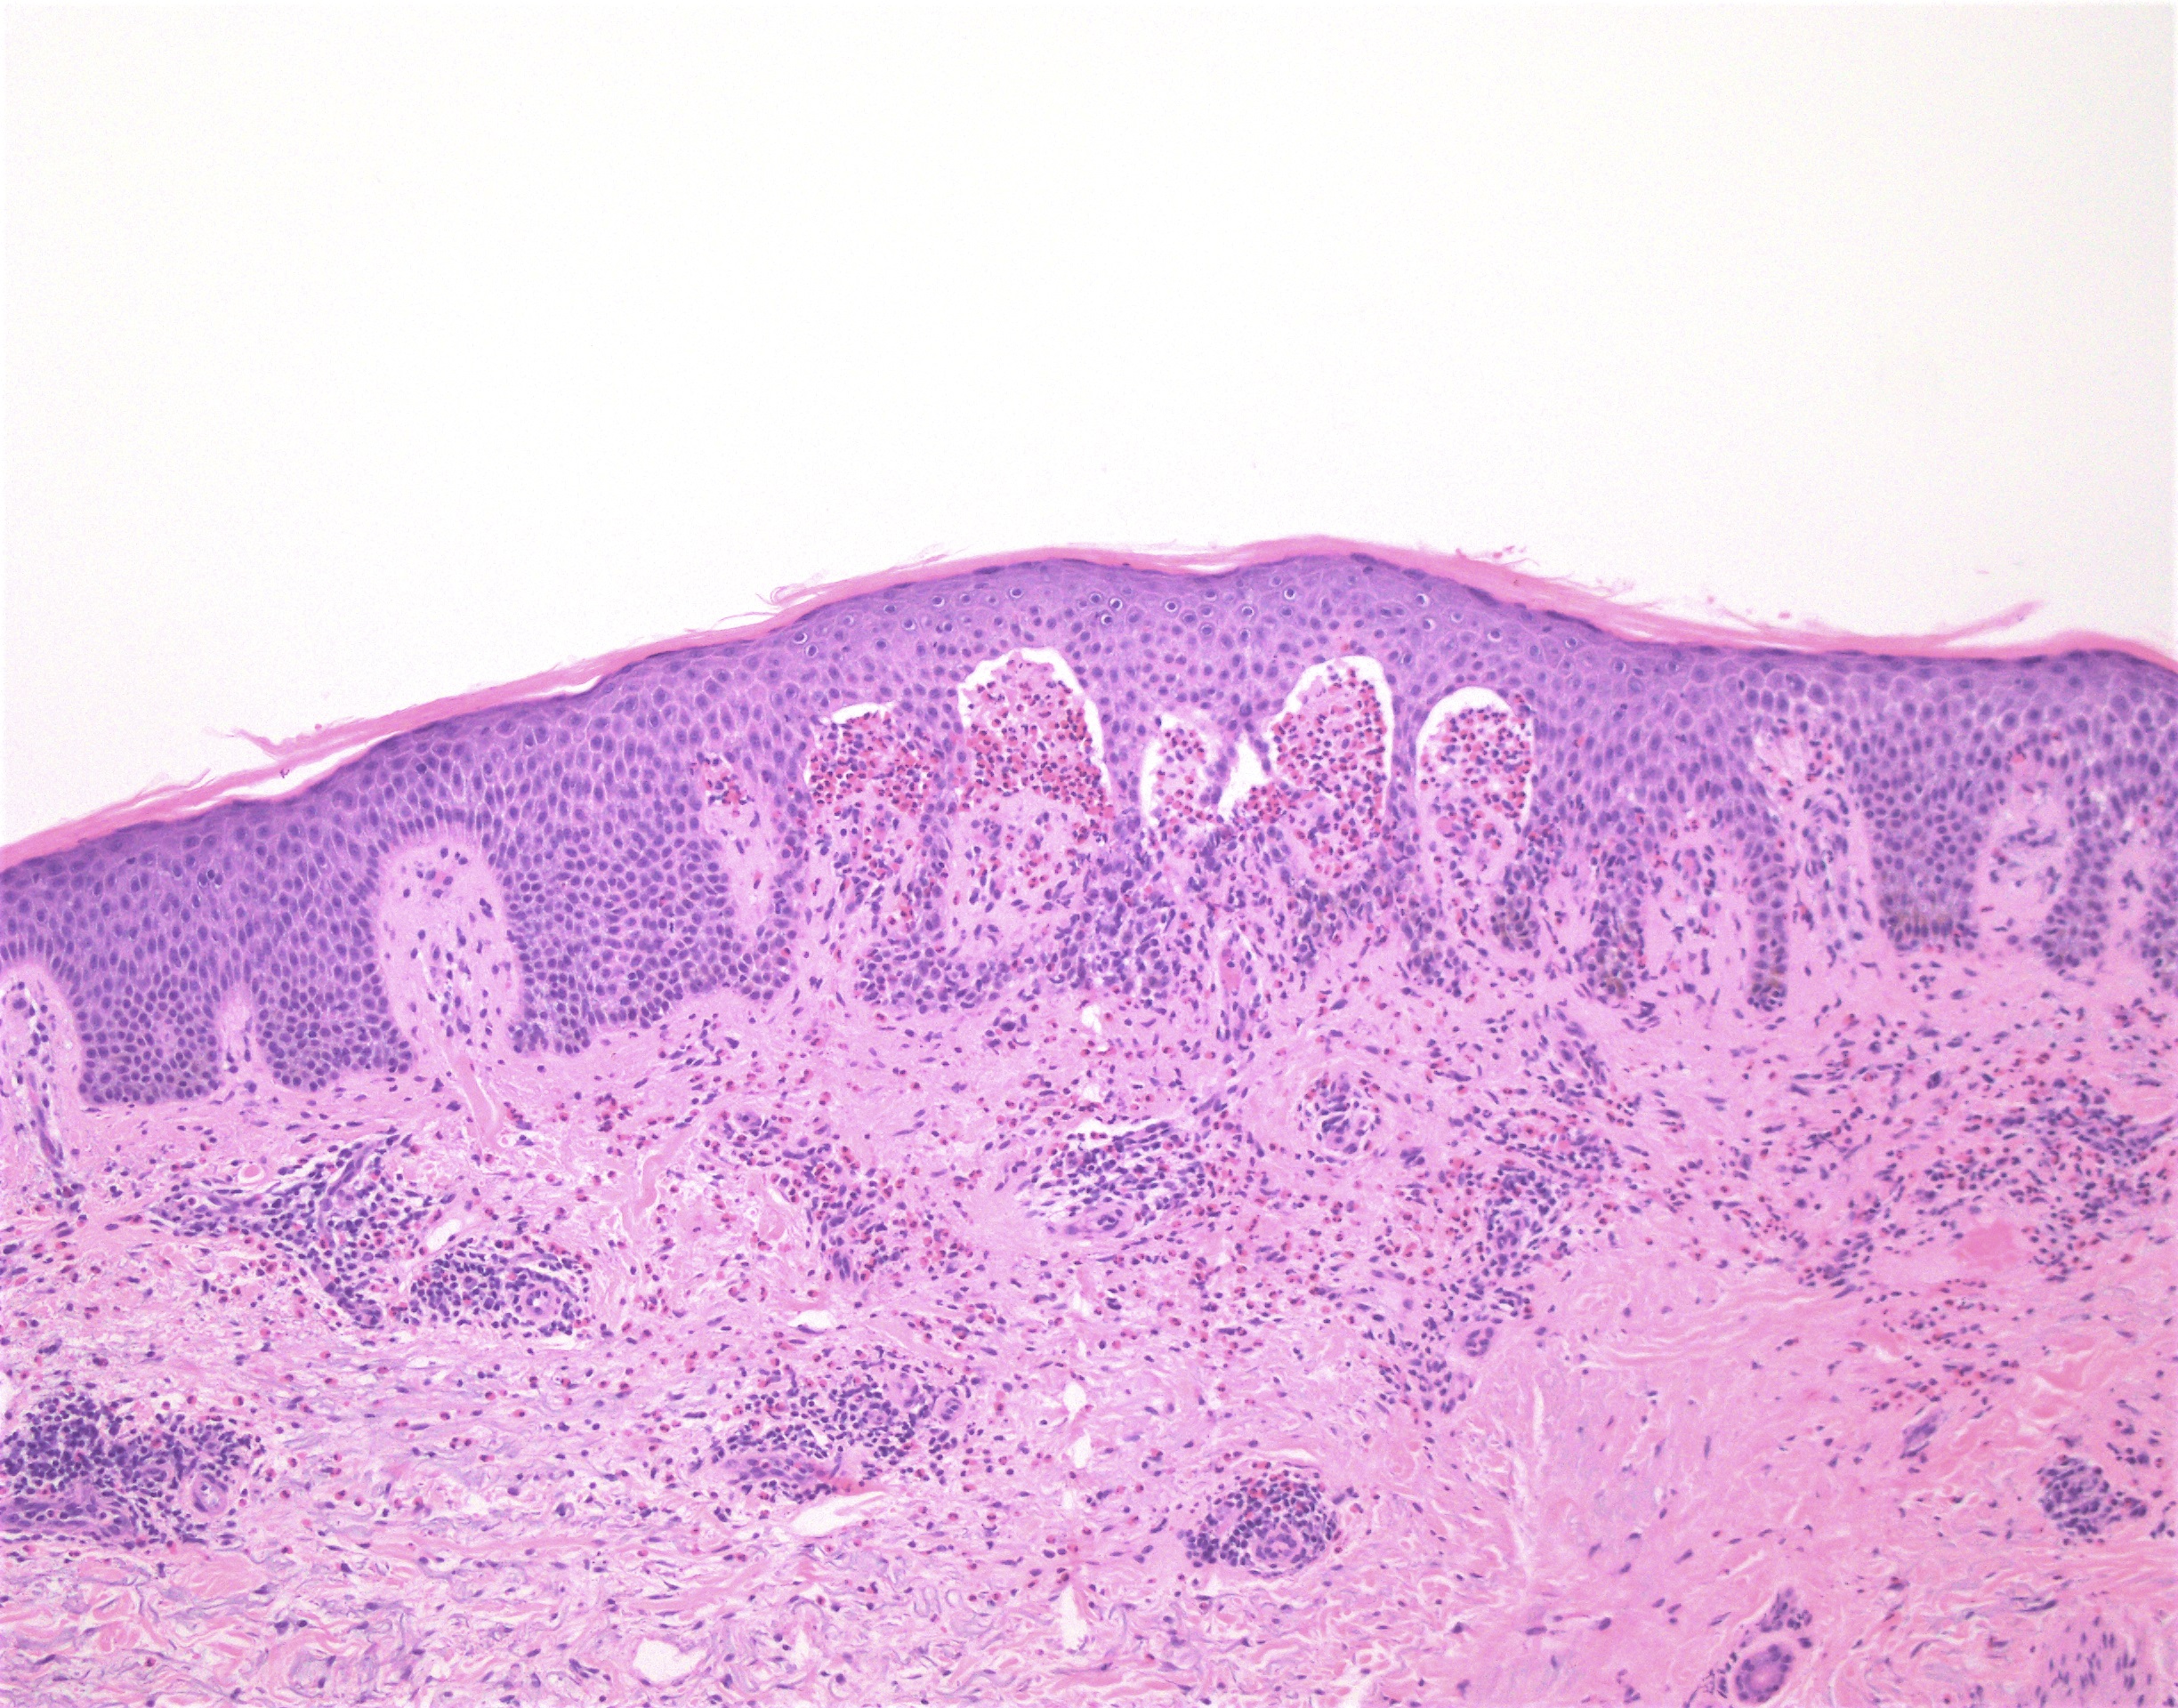 Eosinophil microabscesses in papillary dermis